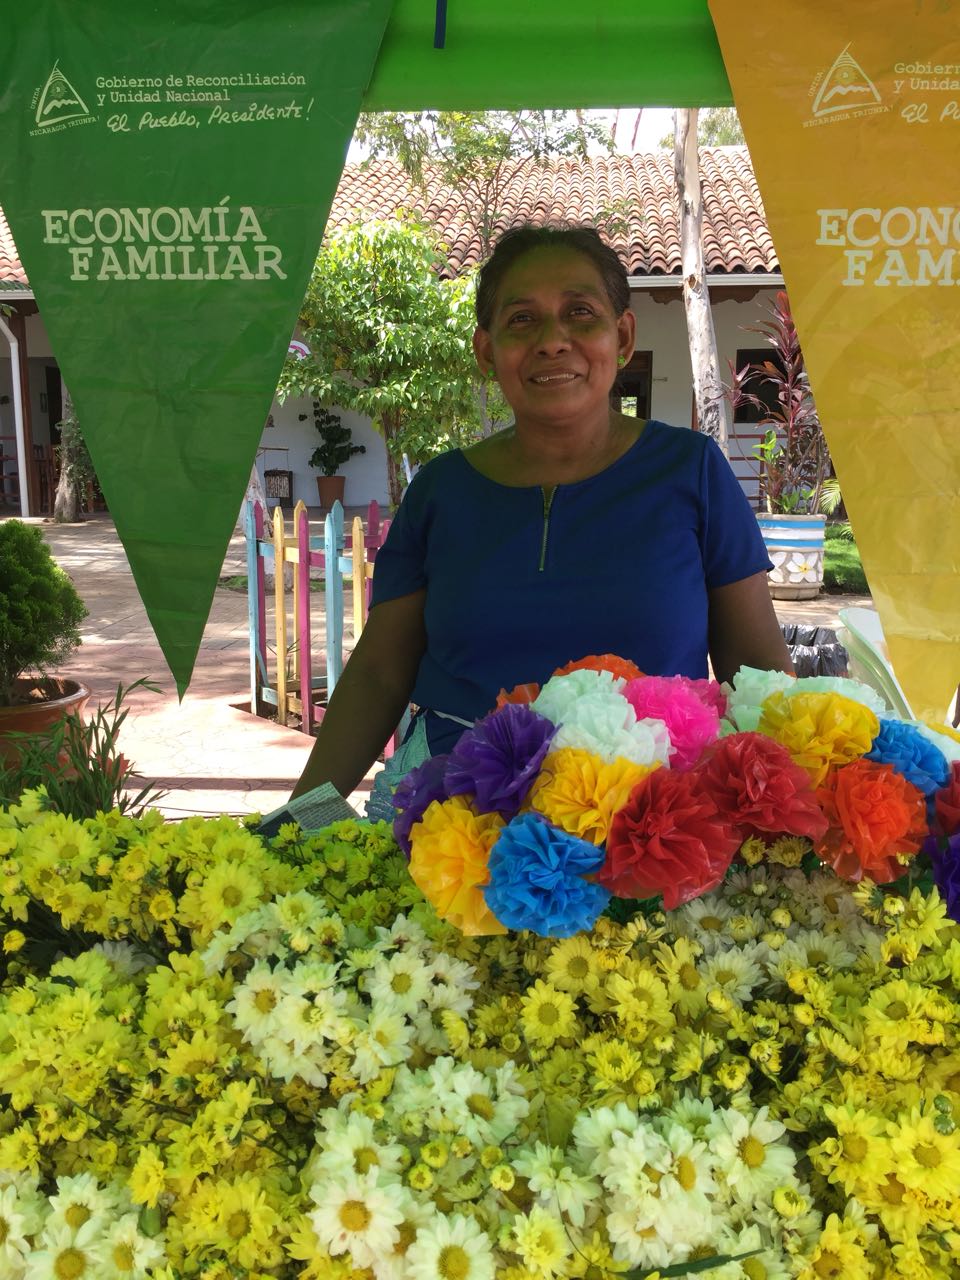 Flores dinamizarán el comercio en Nicaragua este 2 de Noviembre